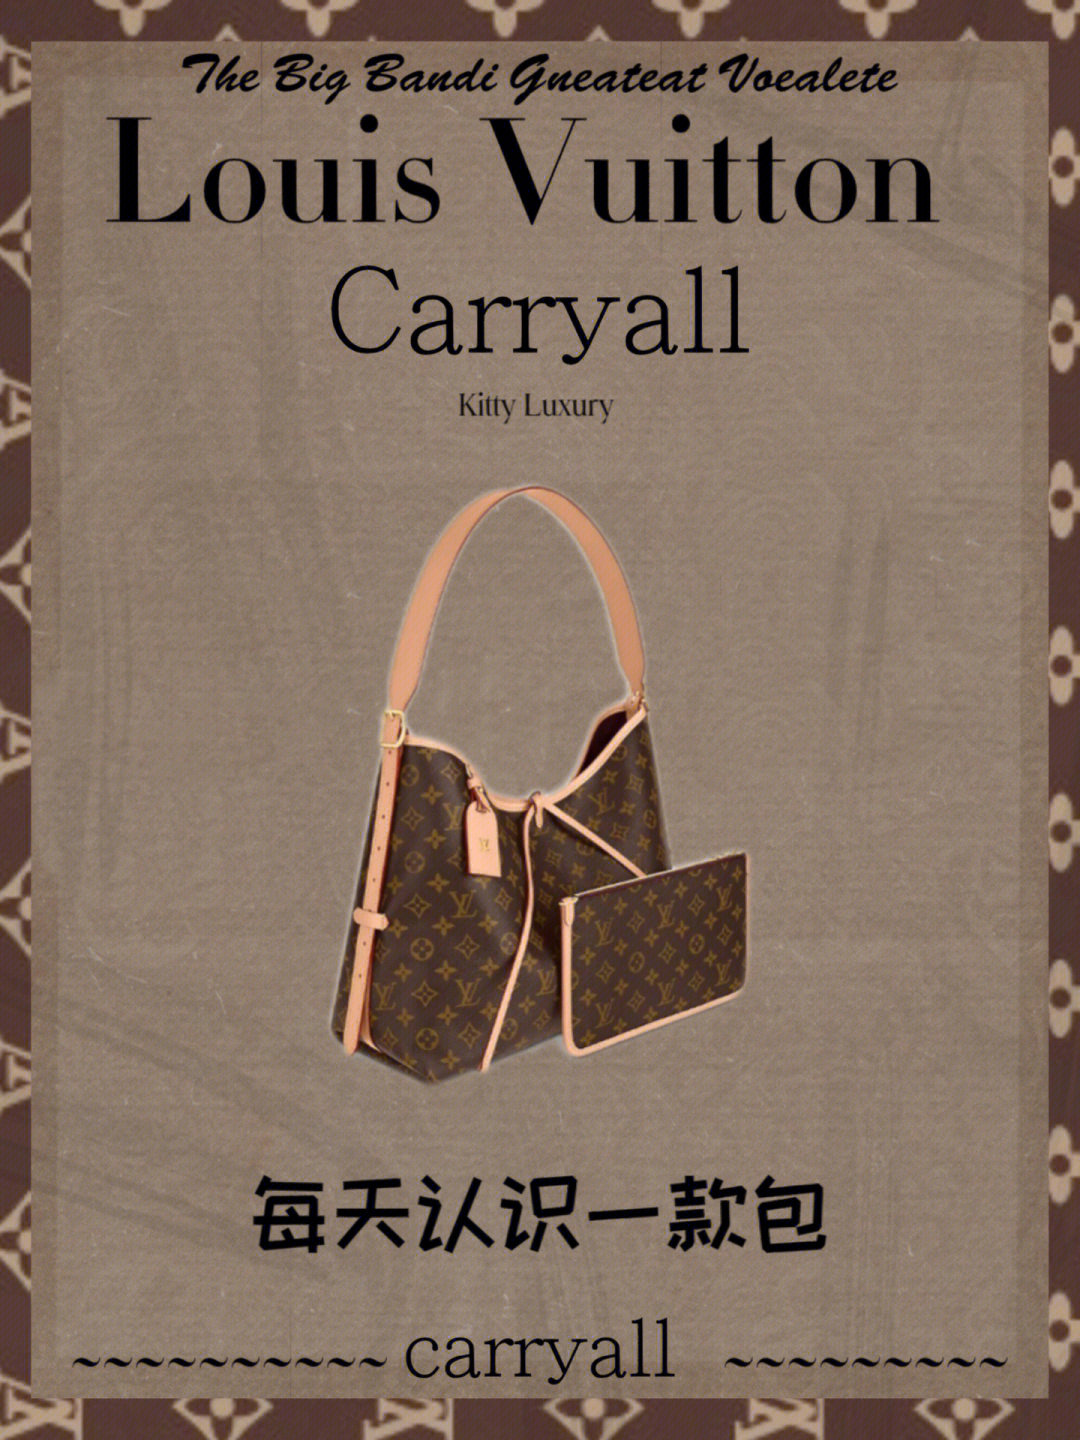 lv于2022年7月推出carryall,在外形上carryall手袋采用了lv家族式